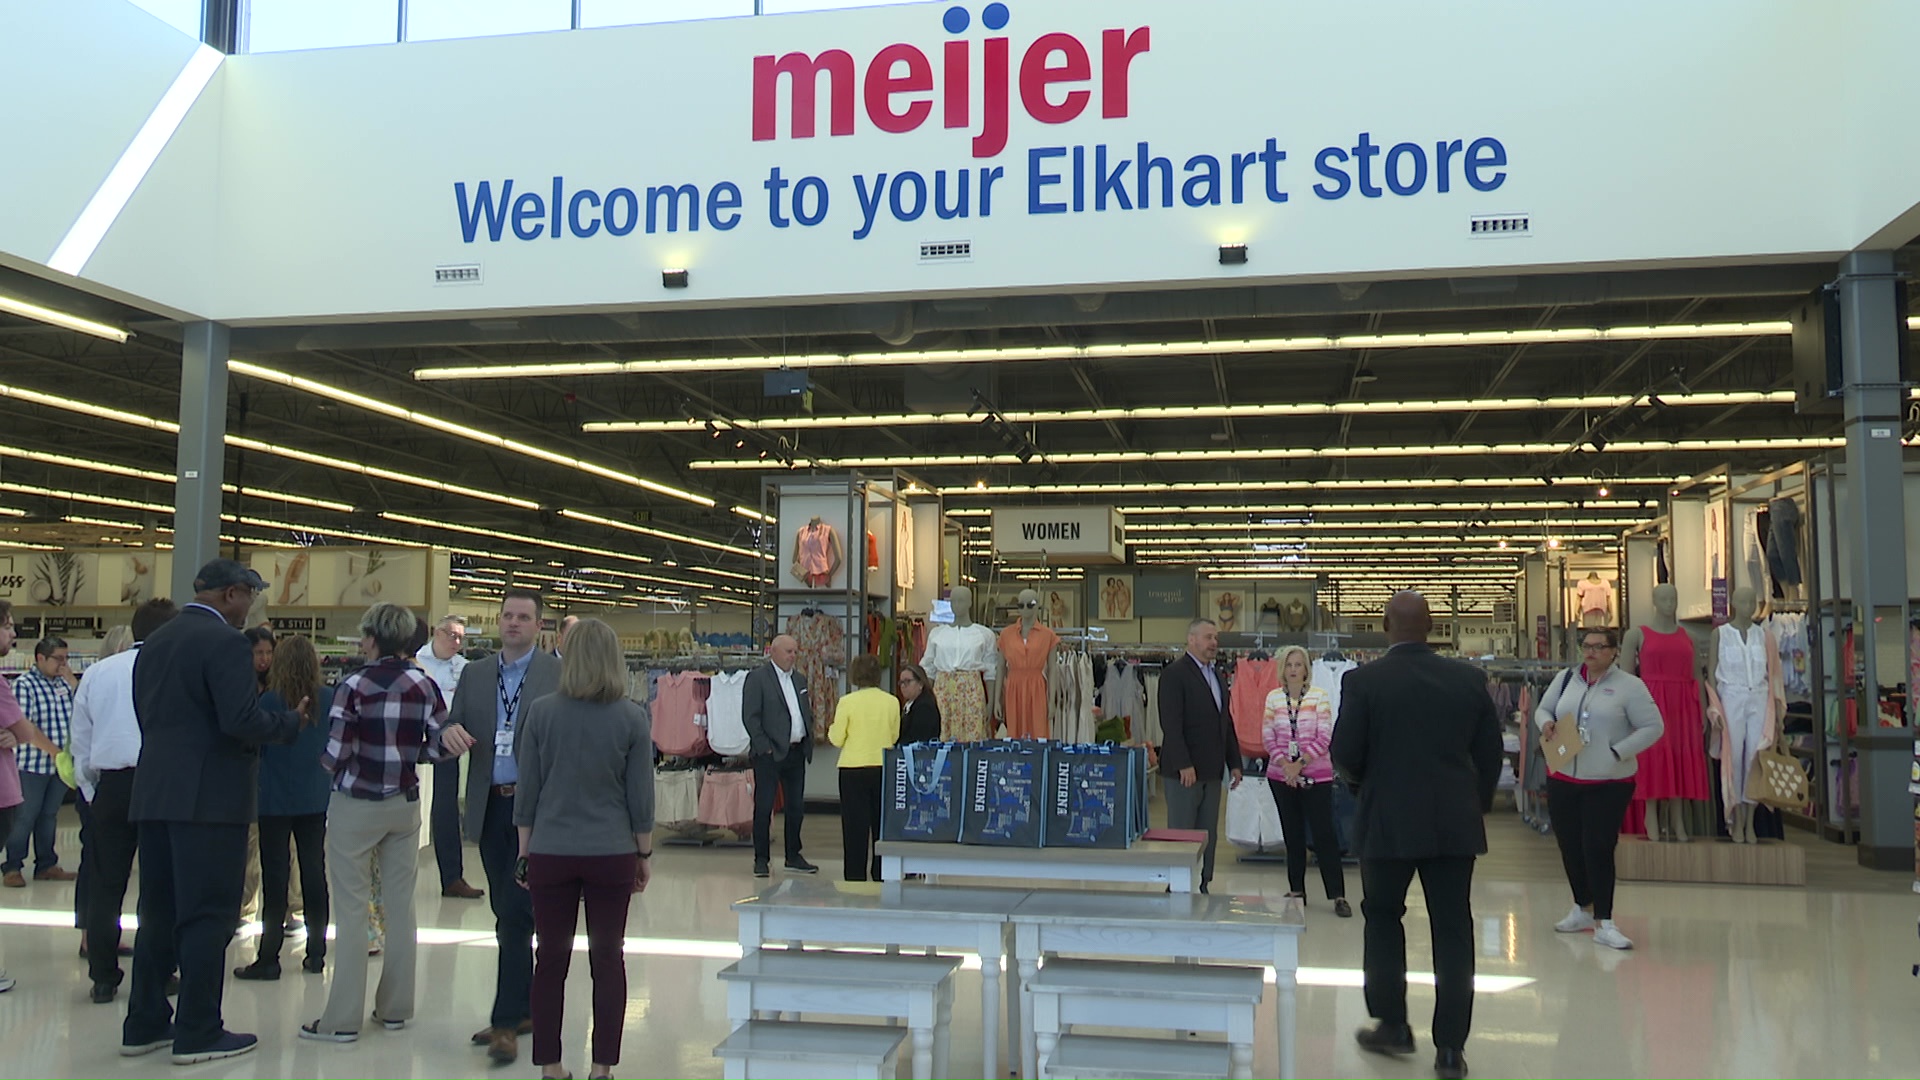 A sneak peek inside the new Meijer supercenter in Elkhart